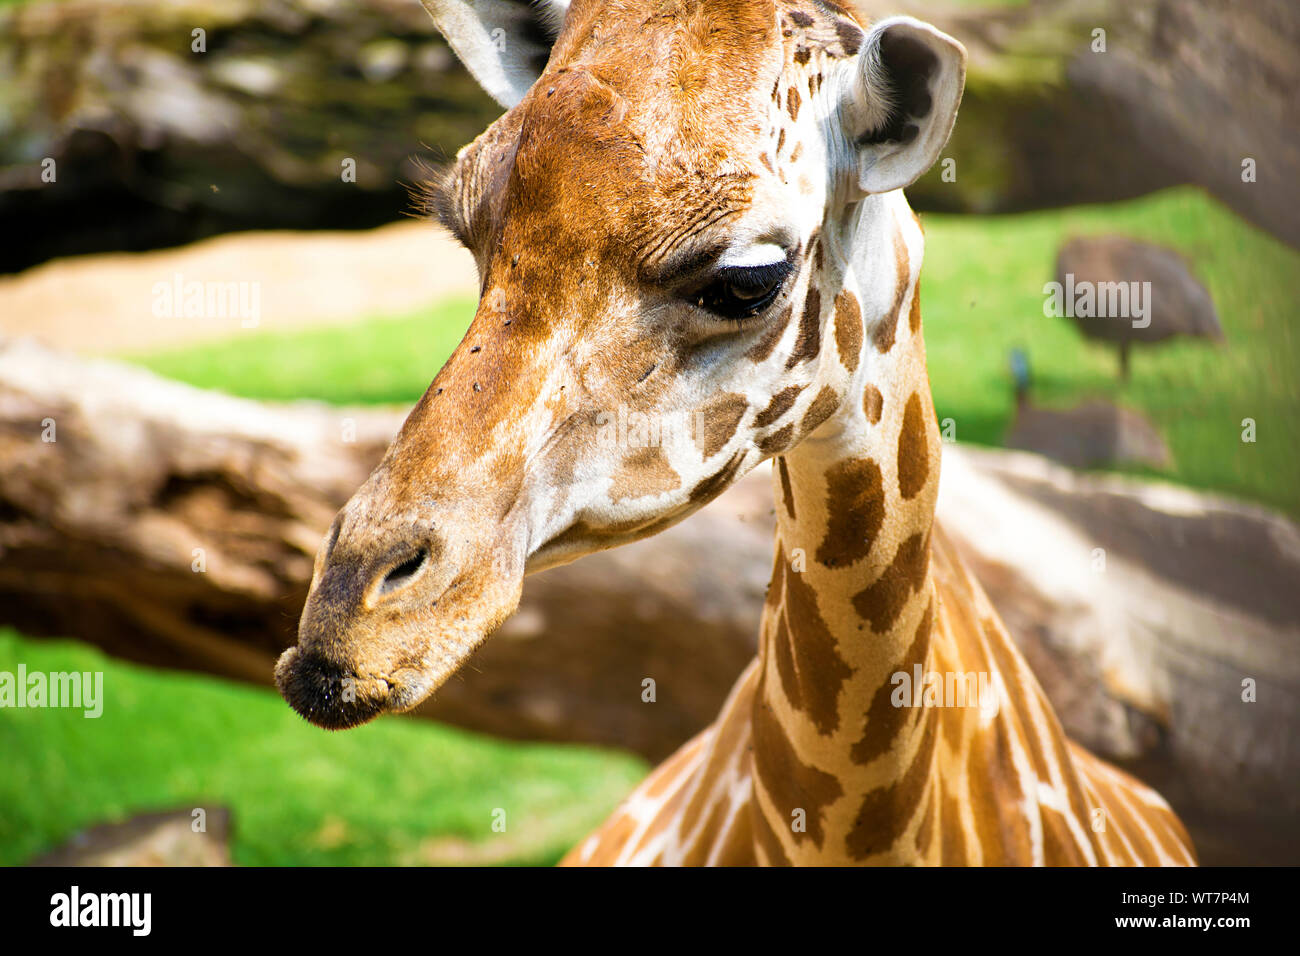 Portrait de giraffe looking at camera. Les Girafes sont même africains-toed mammifère ongulé, le plus grand et le plus grand ruminant. L'Afrique, 2019. Banque D'Images